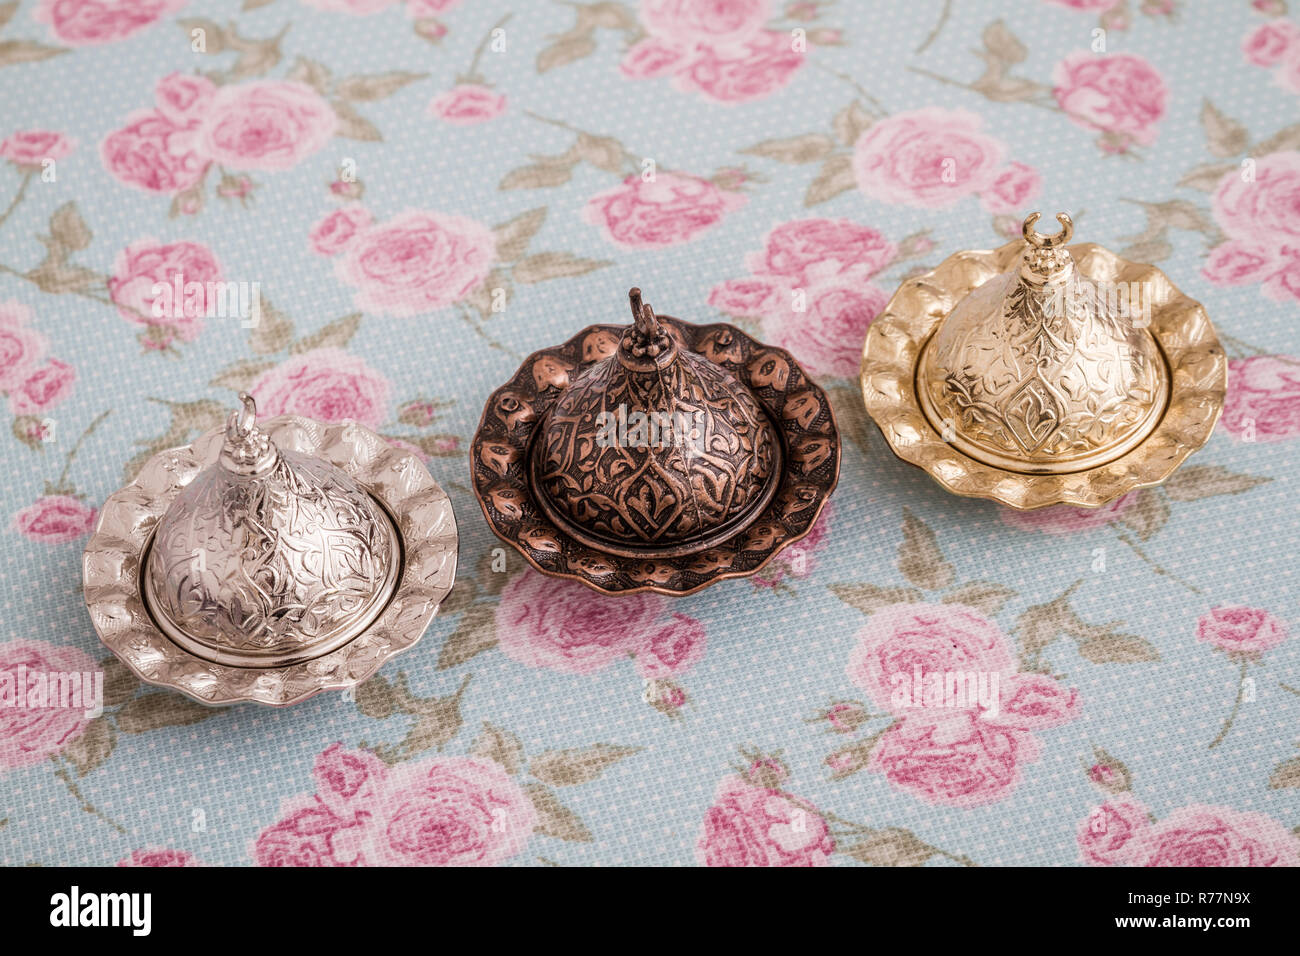 Golden, bronzo e coppe d'argento per servire delizie turche Foto Stock